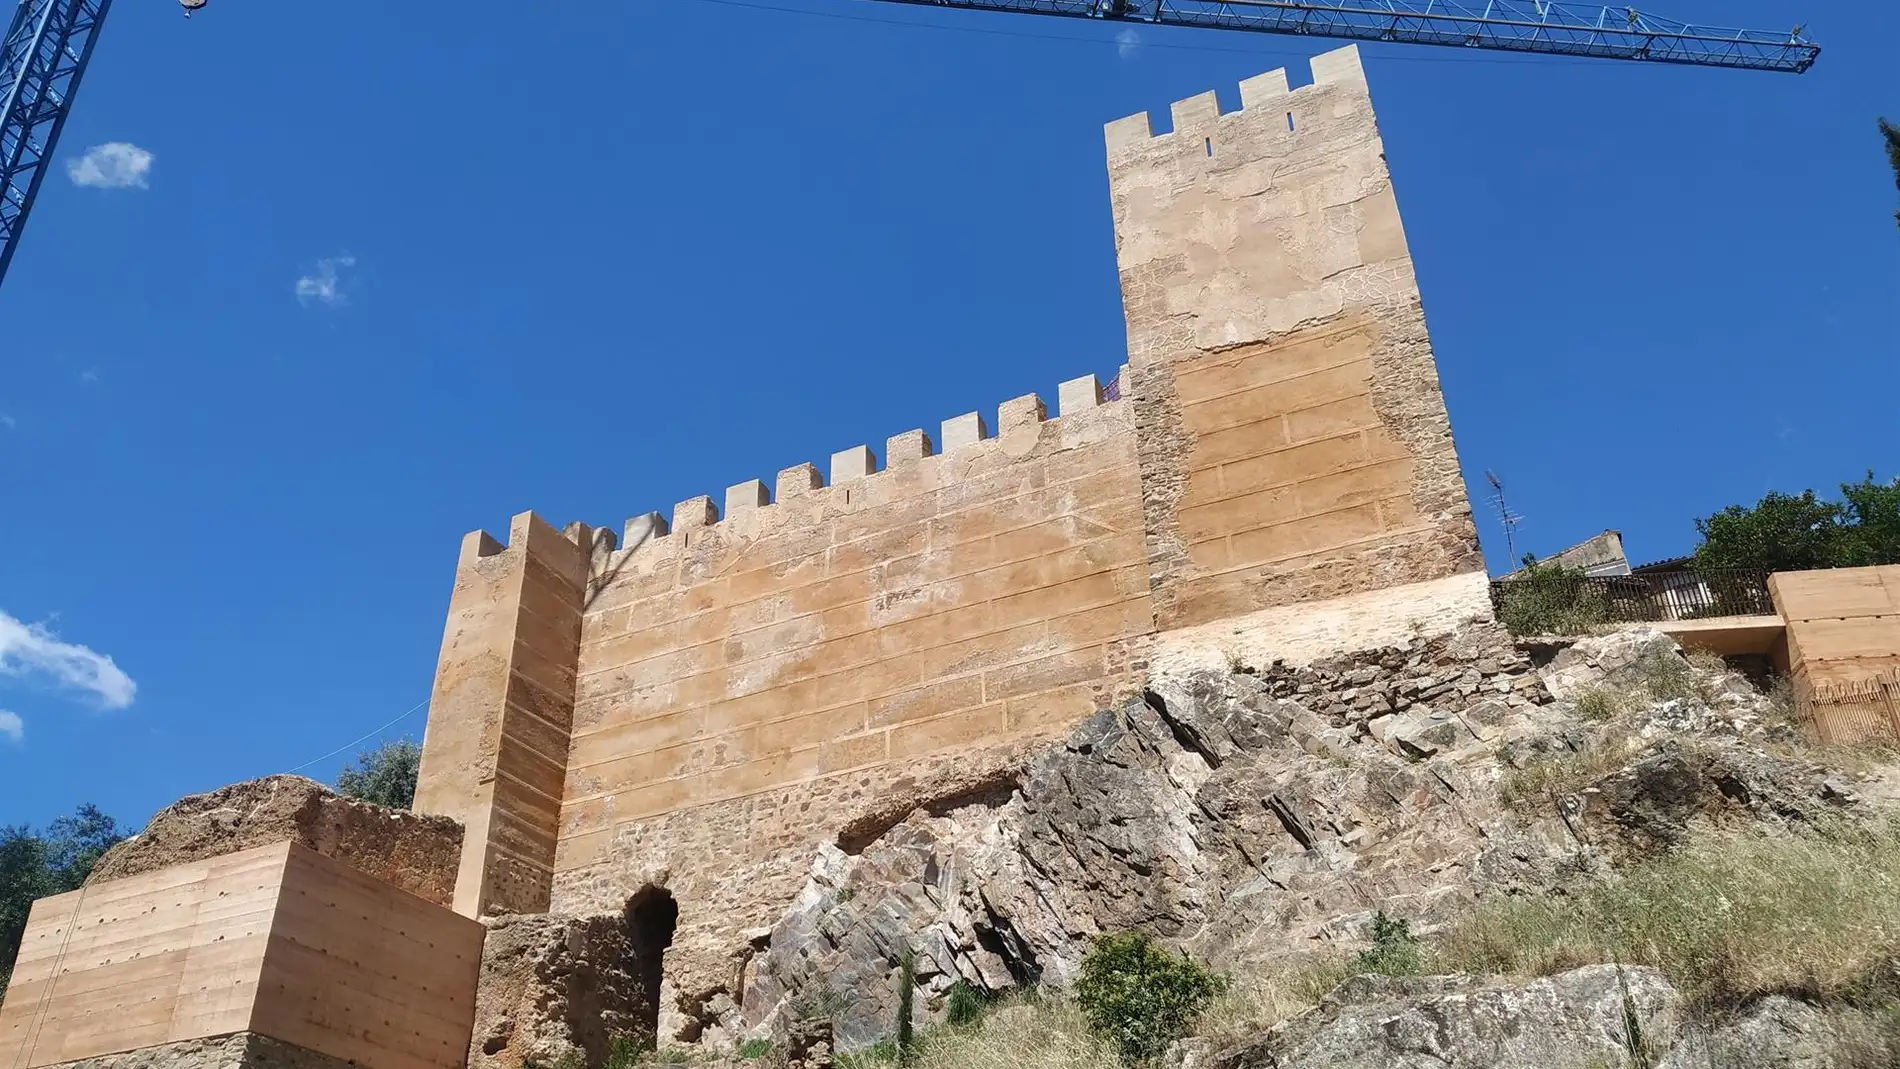 Comienza la obra para vaciar el Baluarte de los Pozos de Cáceres, con lo que concluirá la primera fase de la muralla